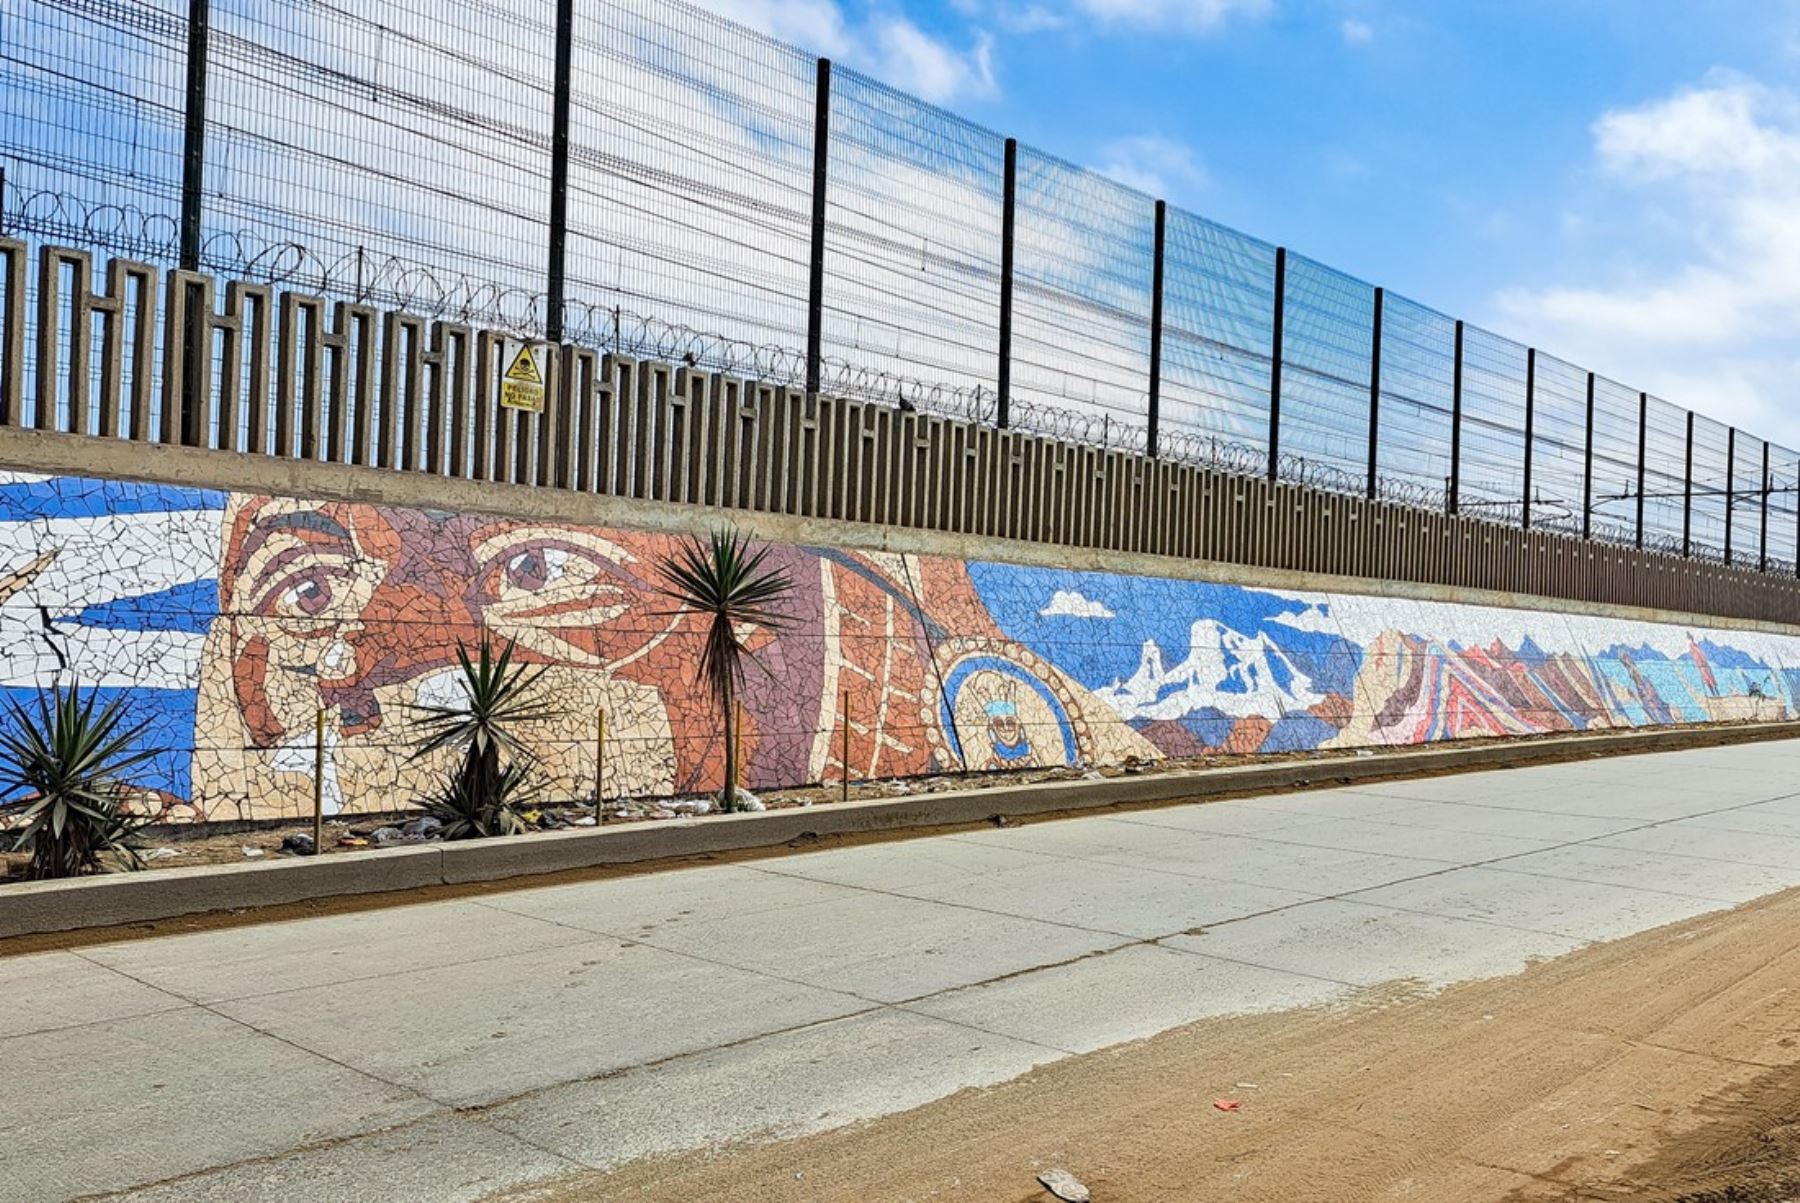 Villa El Salvador: inauguran mural de mosaicos con imágenes emblemáticas del Perú | Noticias | Agencia Peruana de Noticias Andina